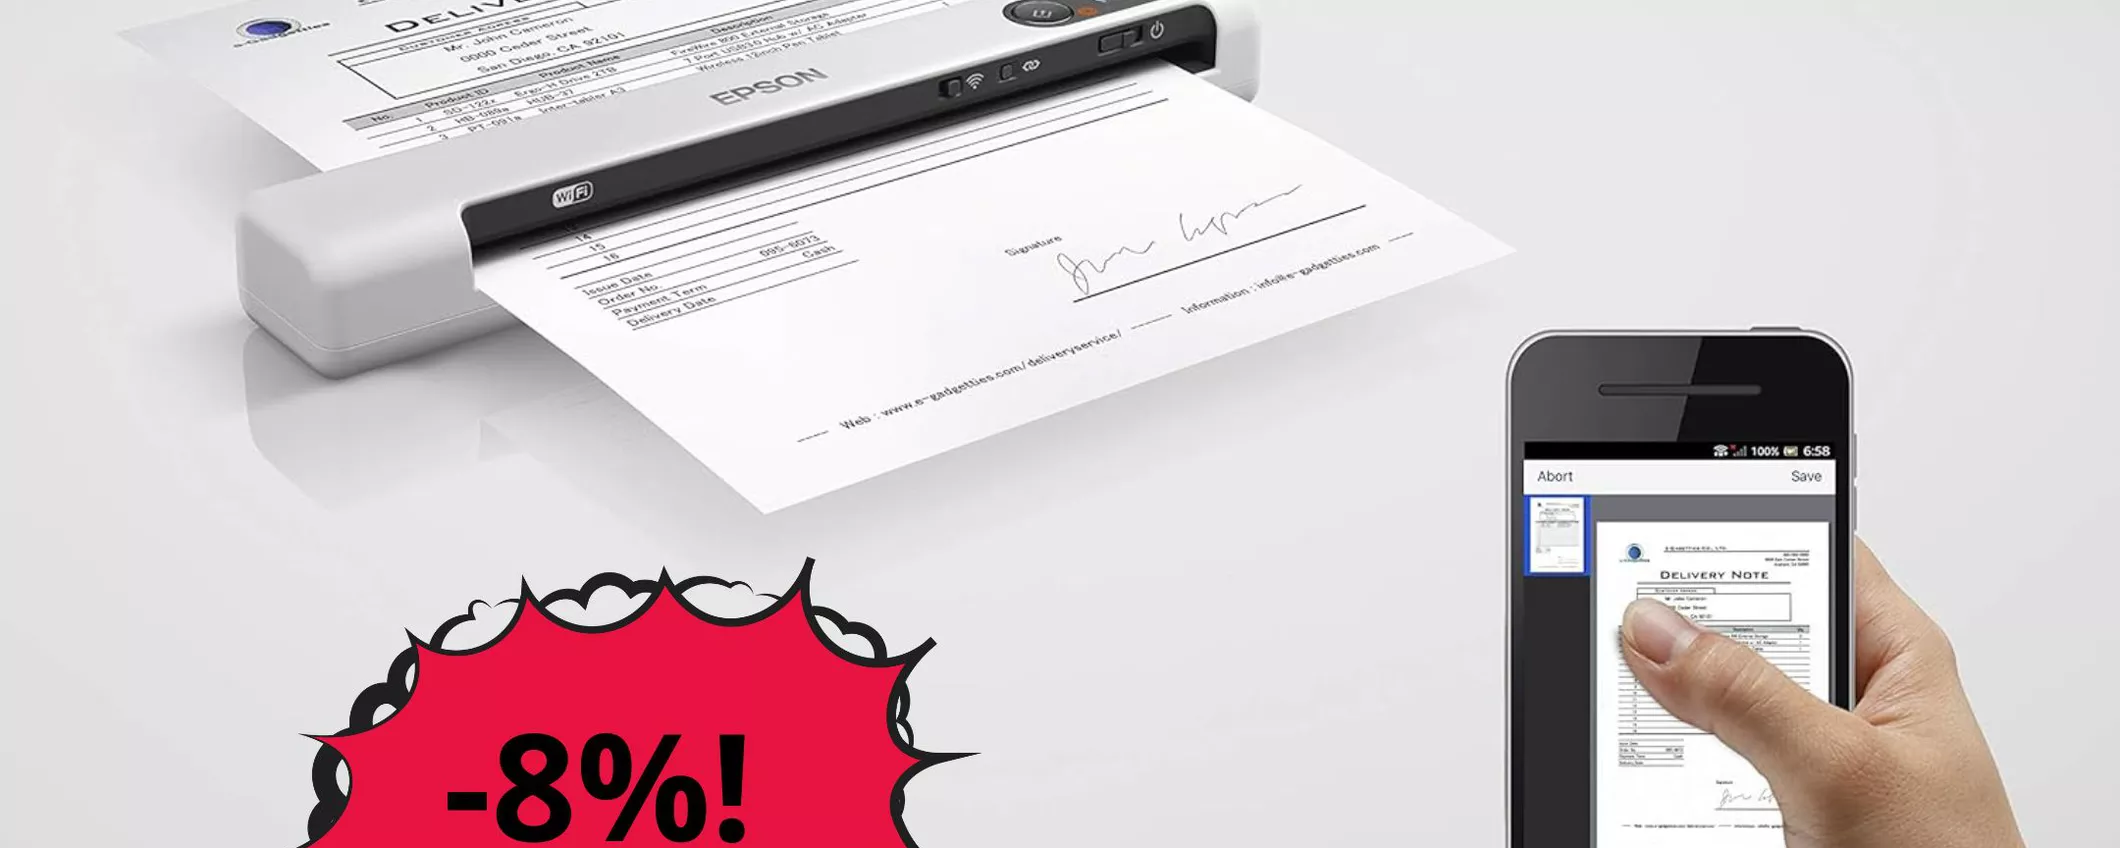 Digitalizza documenti cartacei ovunque tu sia con questo scanner Epson in OFFERTA!